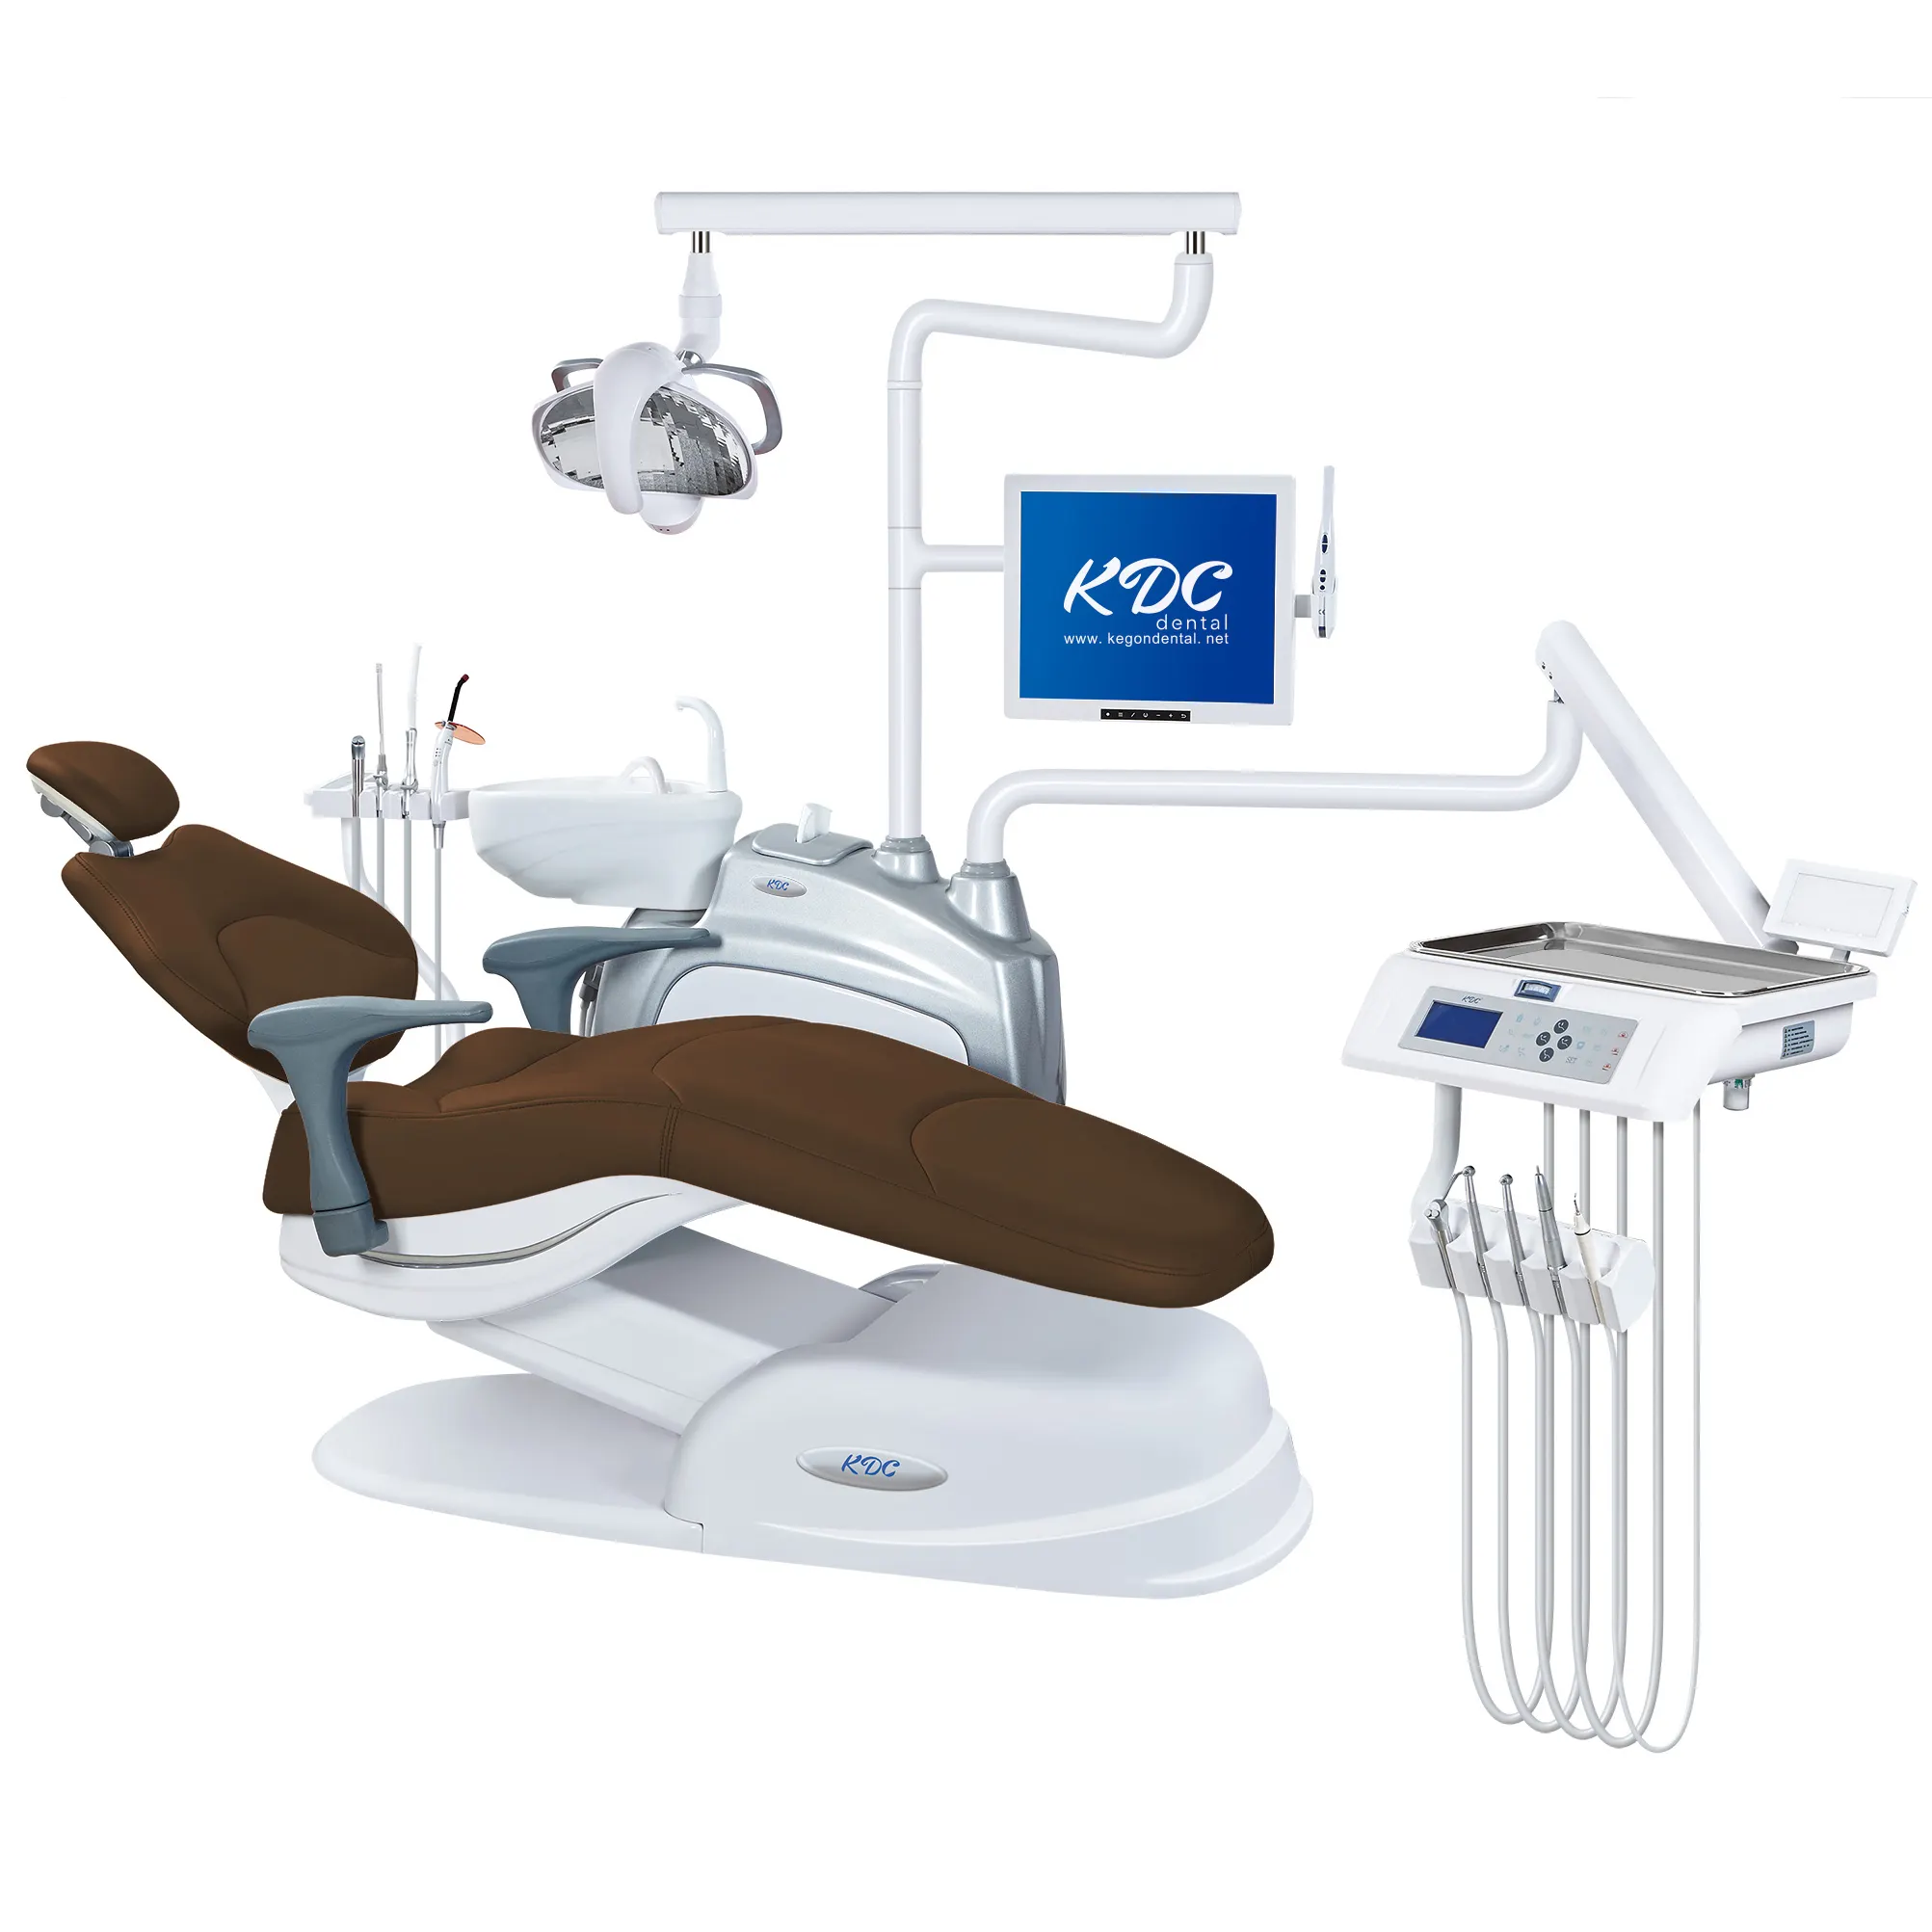 الأسنان وحدة مجموعة حار بيع كرسي طبيب أسنان متعددة الوظائف الكهربائية العلاج آلة الحديثة كرسي طبيب أسنان مع سعر جيد